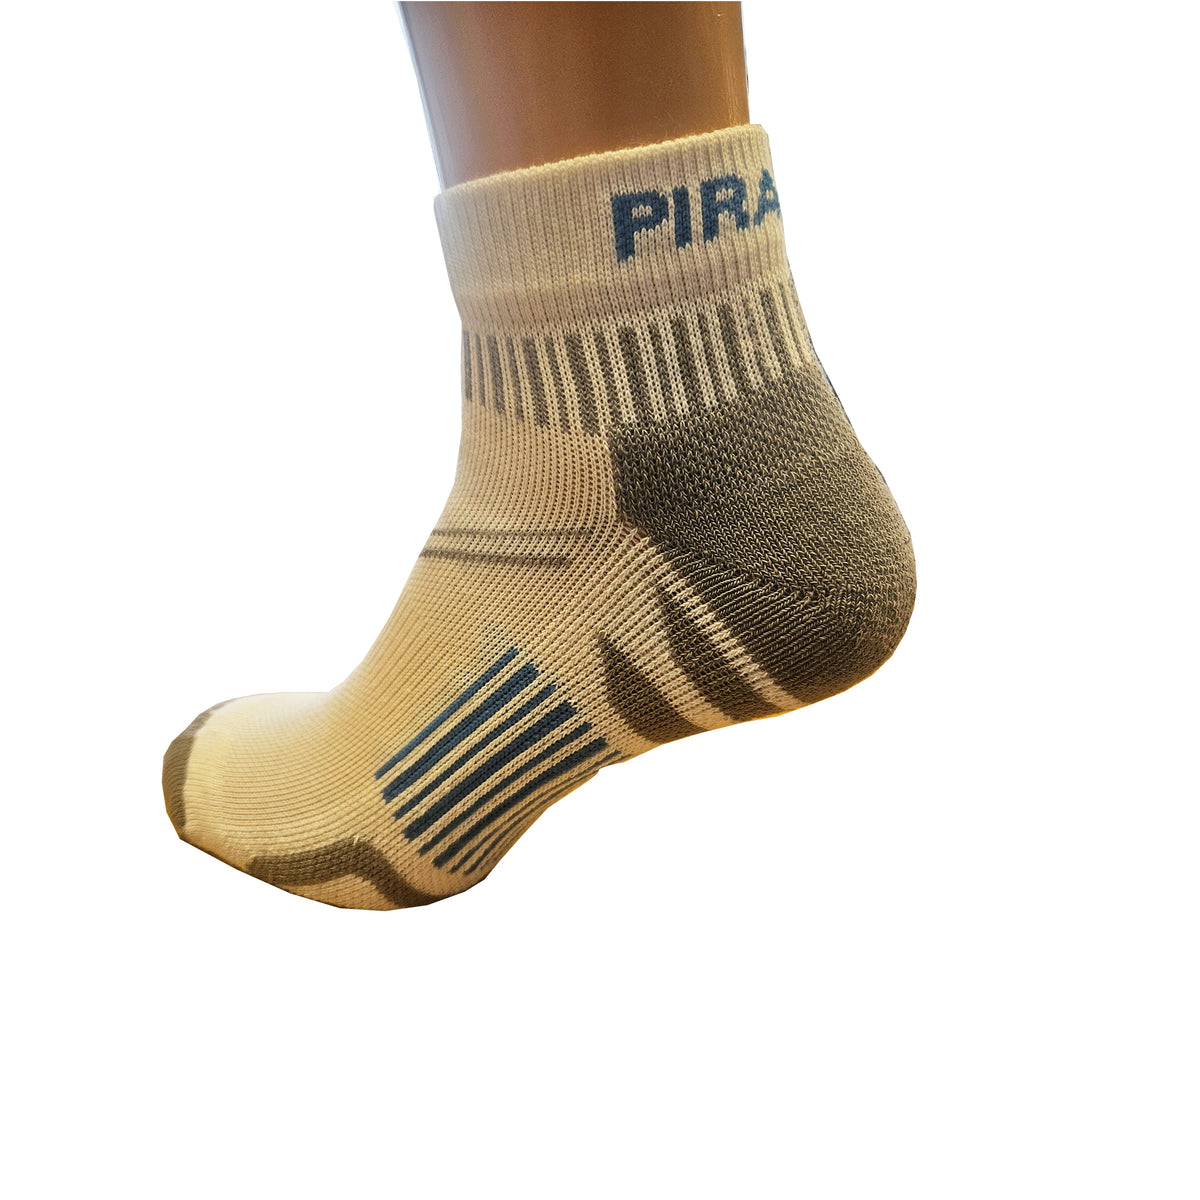 Piranha Tech Running Socks